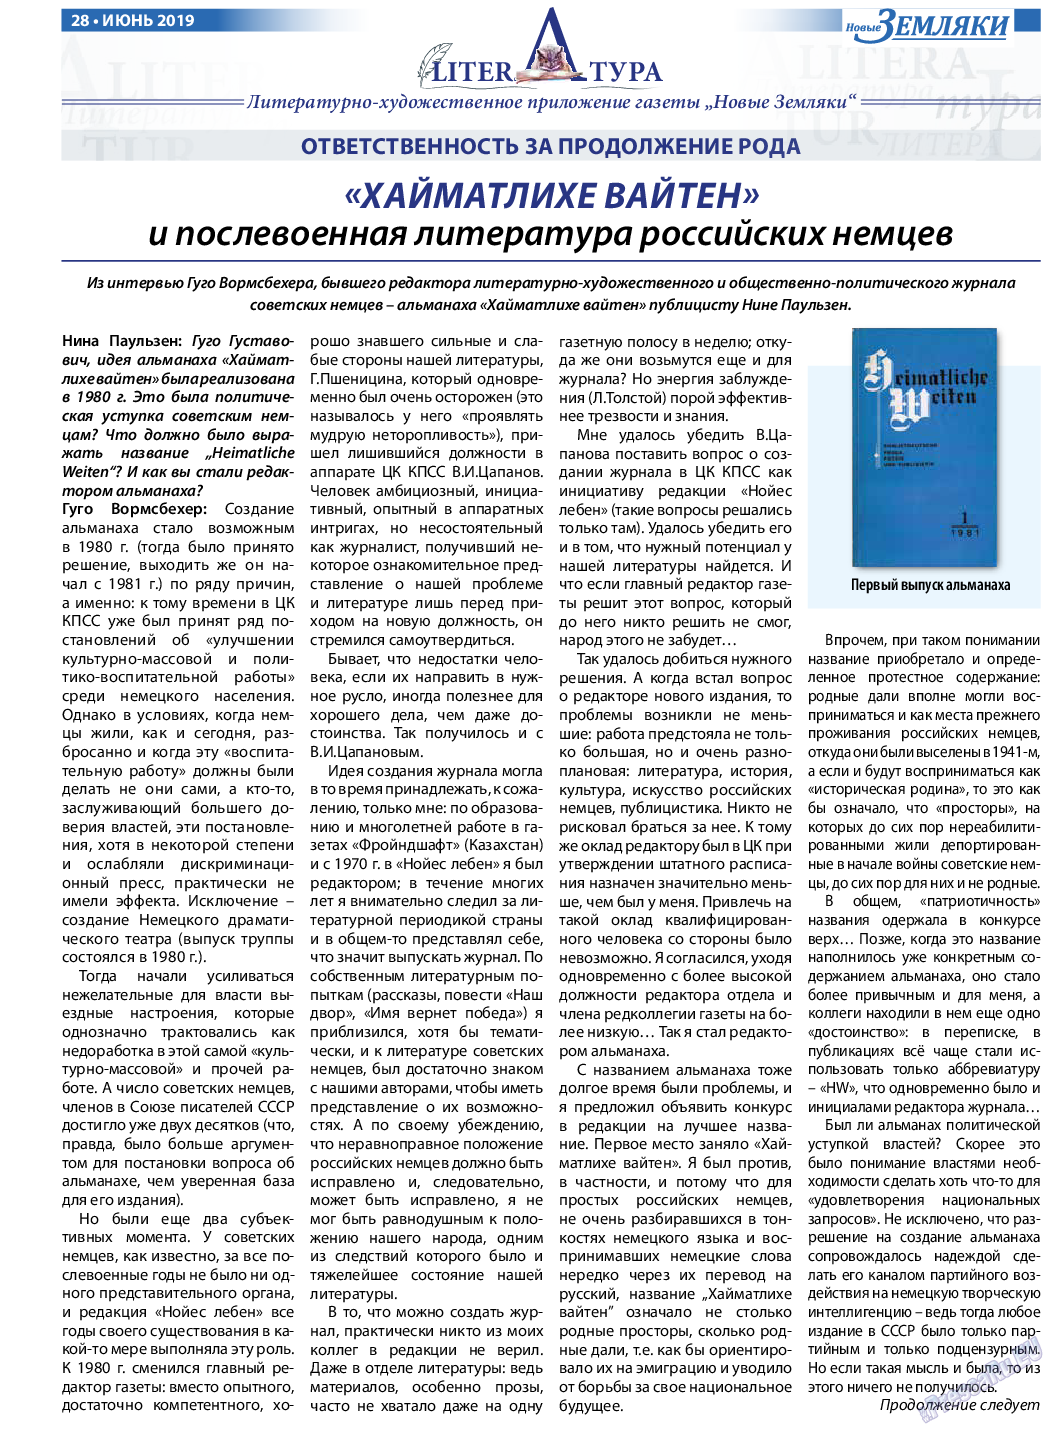 Новые Земляки, газета. 2019 №6 стр.28